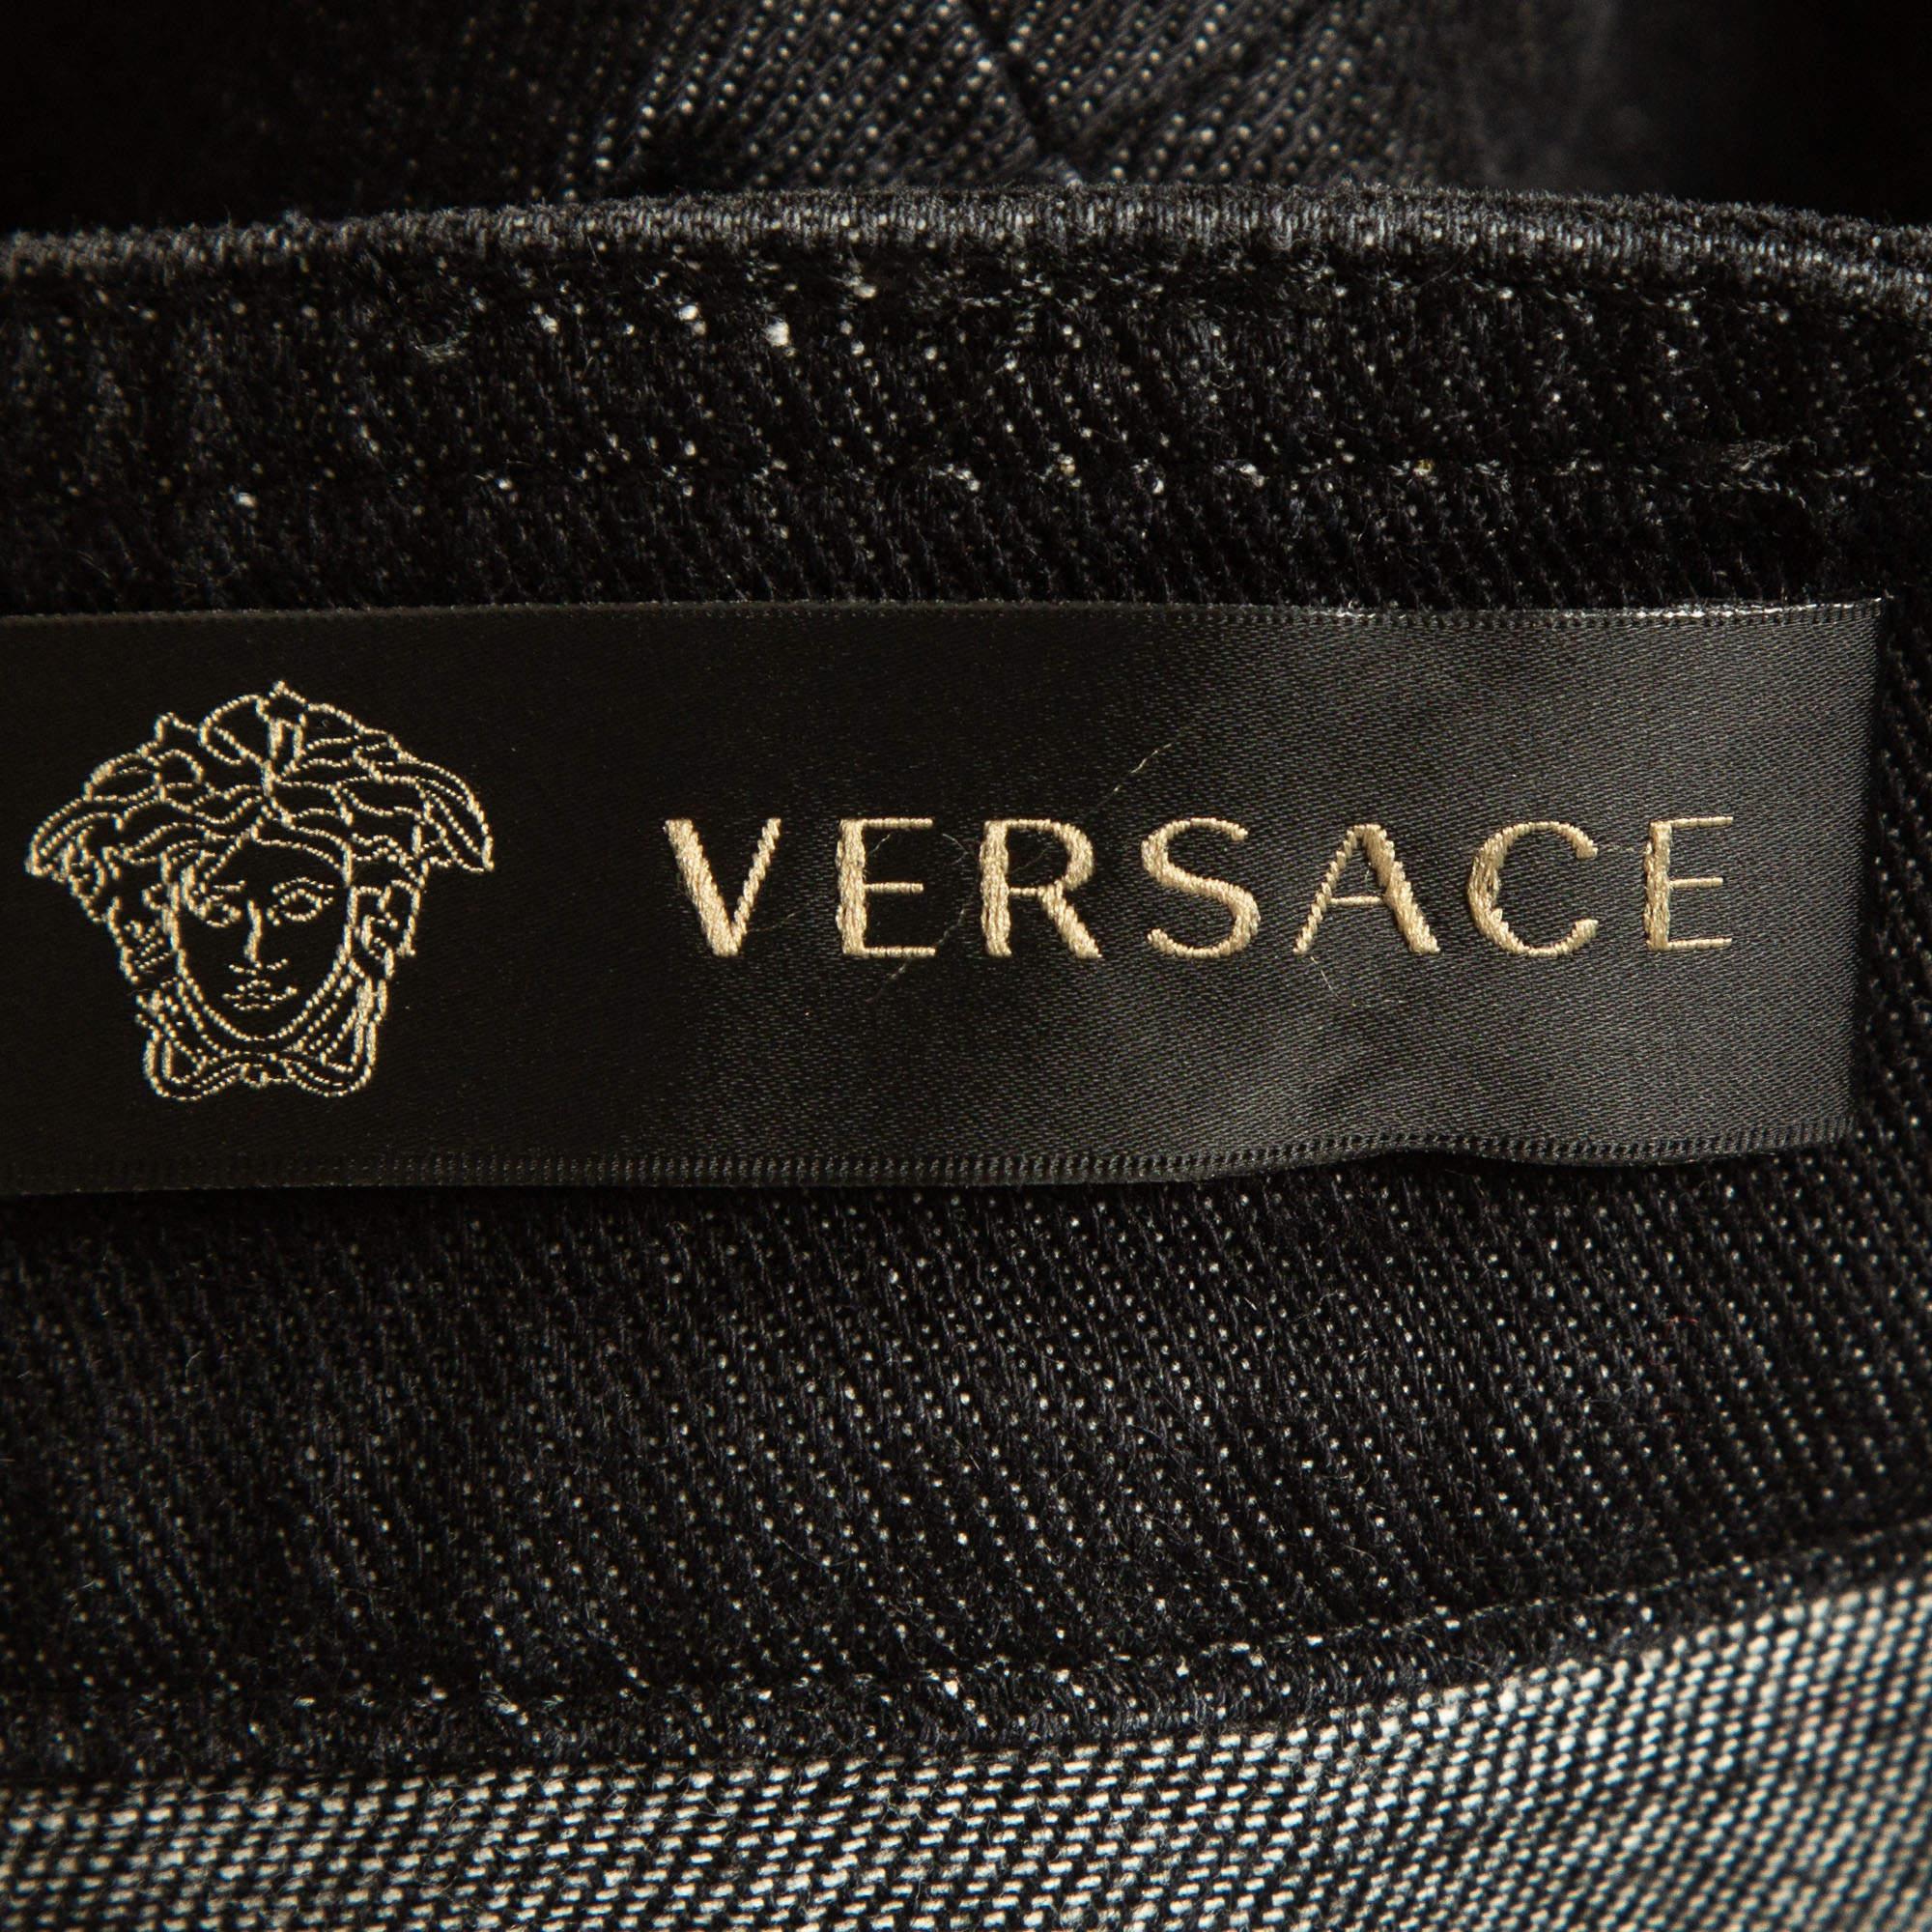 Versace Multicolor Plaid Patched Denim Jeans S Waist 25